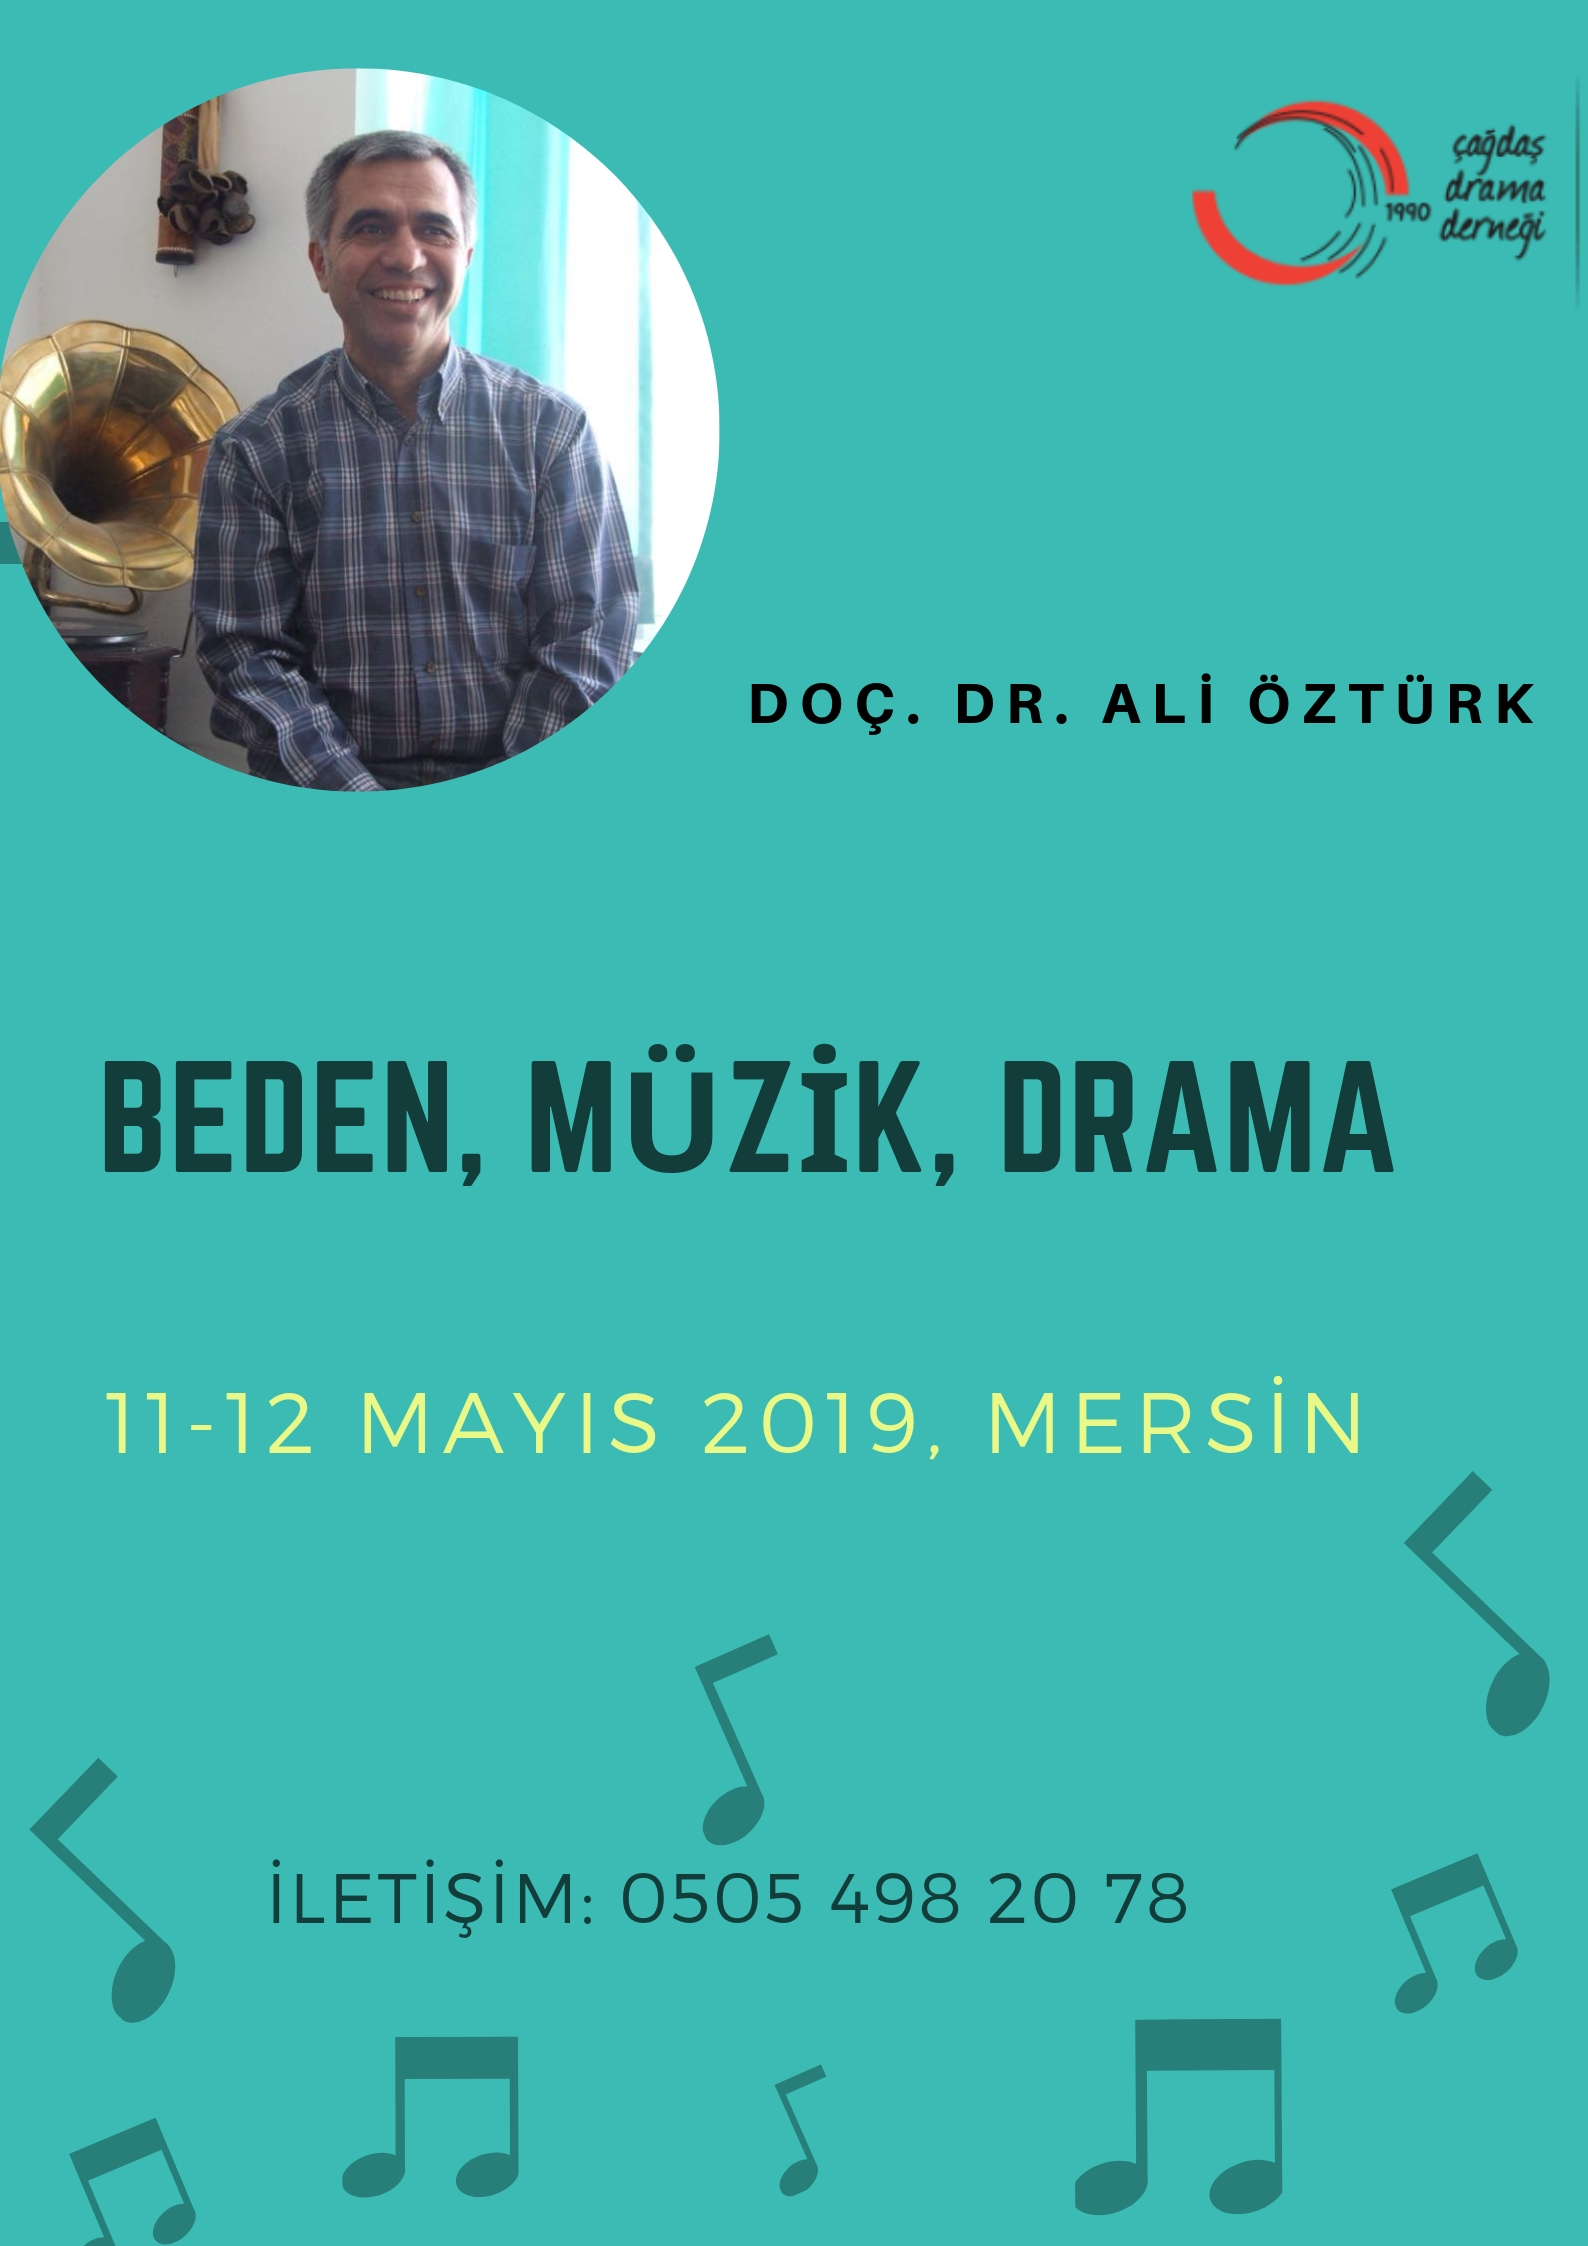 Konulu Atölye (Mersin) / Beden, Müzik, Drama – Doç. Dr. Ali Öztürk